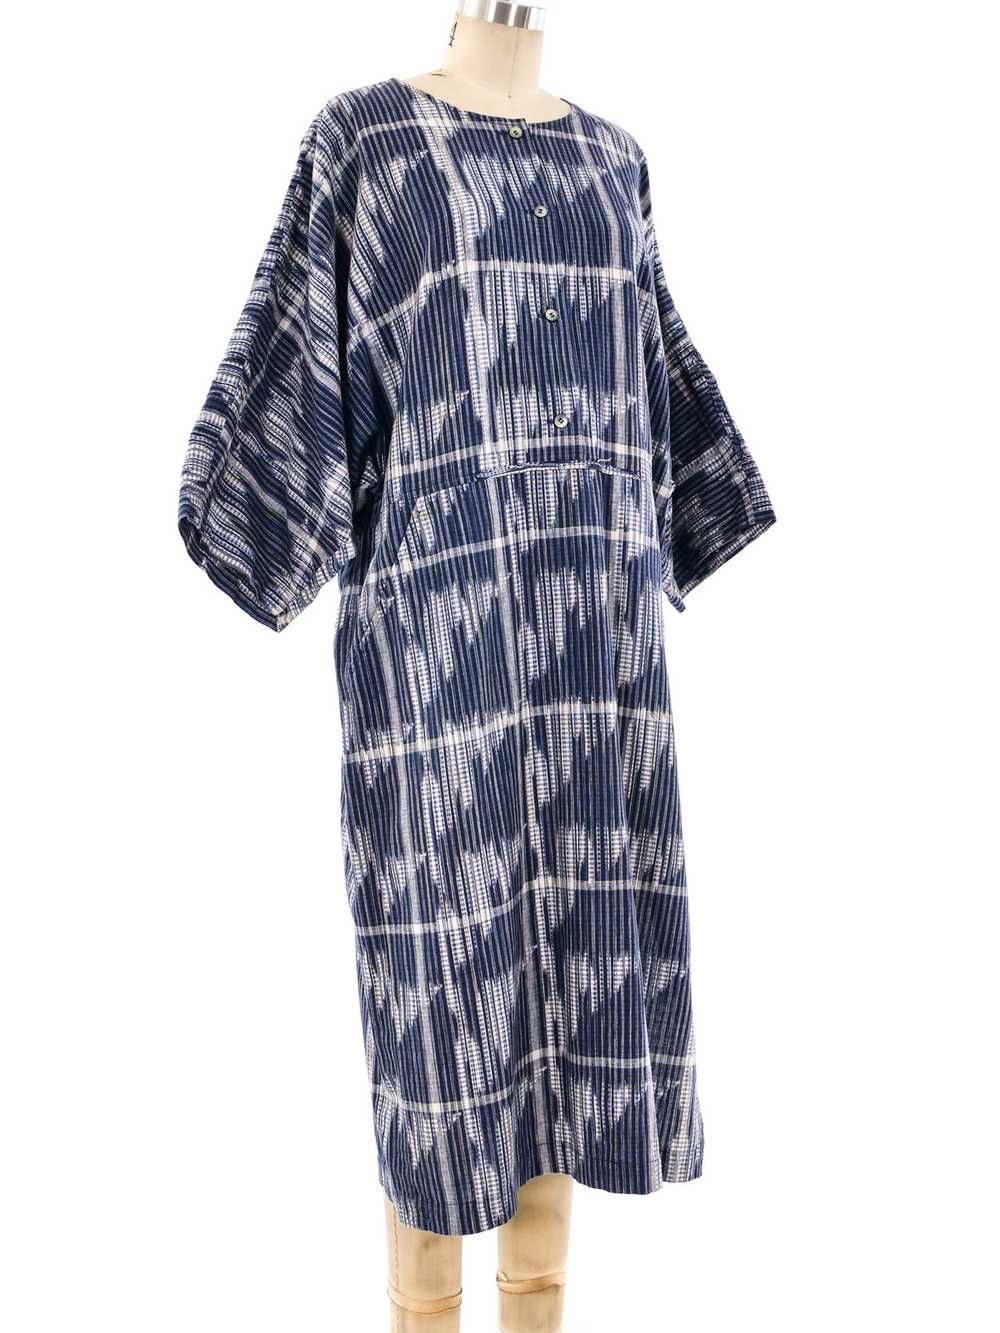 Issey Miyake Ikat Tunic Dress - image 3